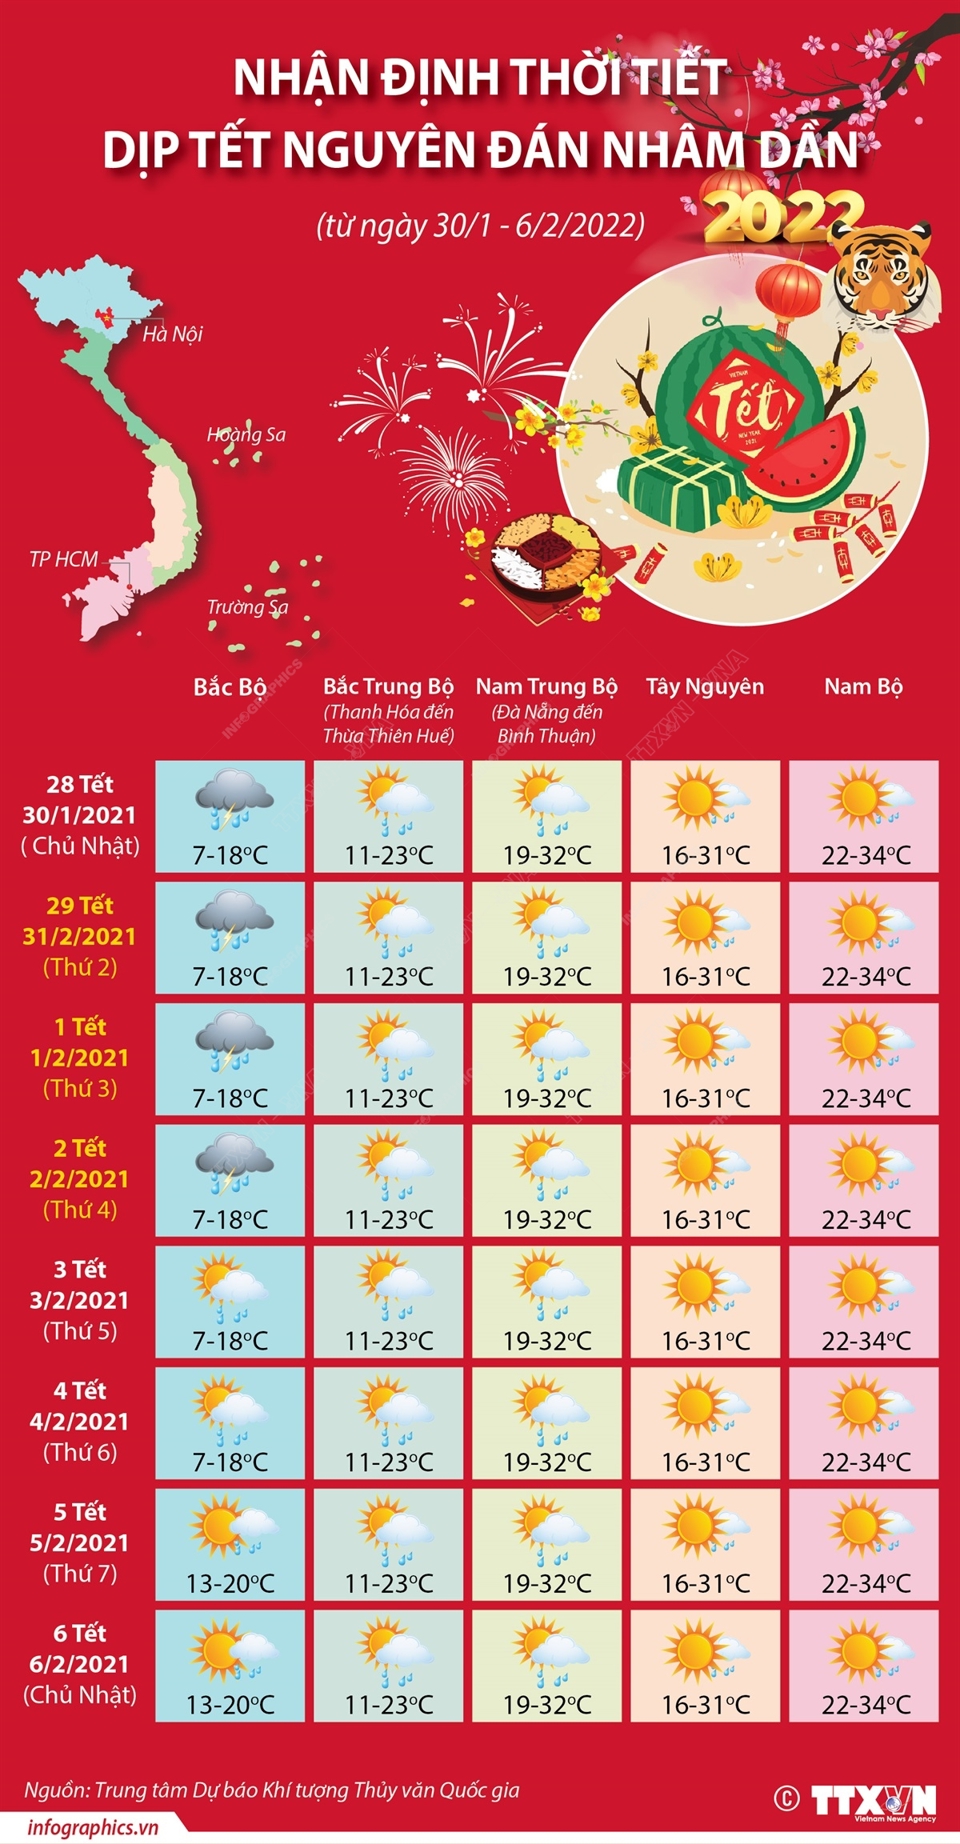 Nhận định thời tiết Tết Nguyên đán Nhâm Dần (từ ngày 30/1 - 6/2/2022) - Ảnh 1